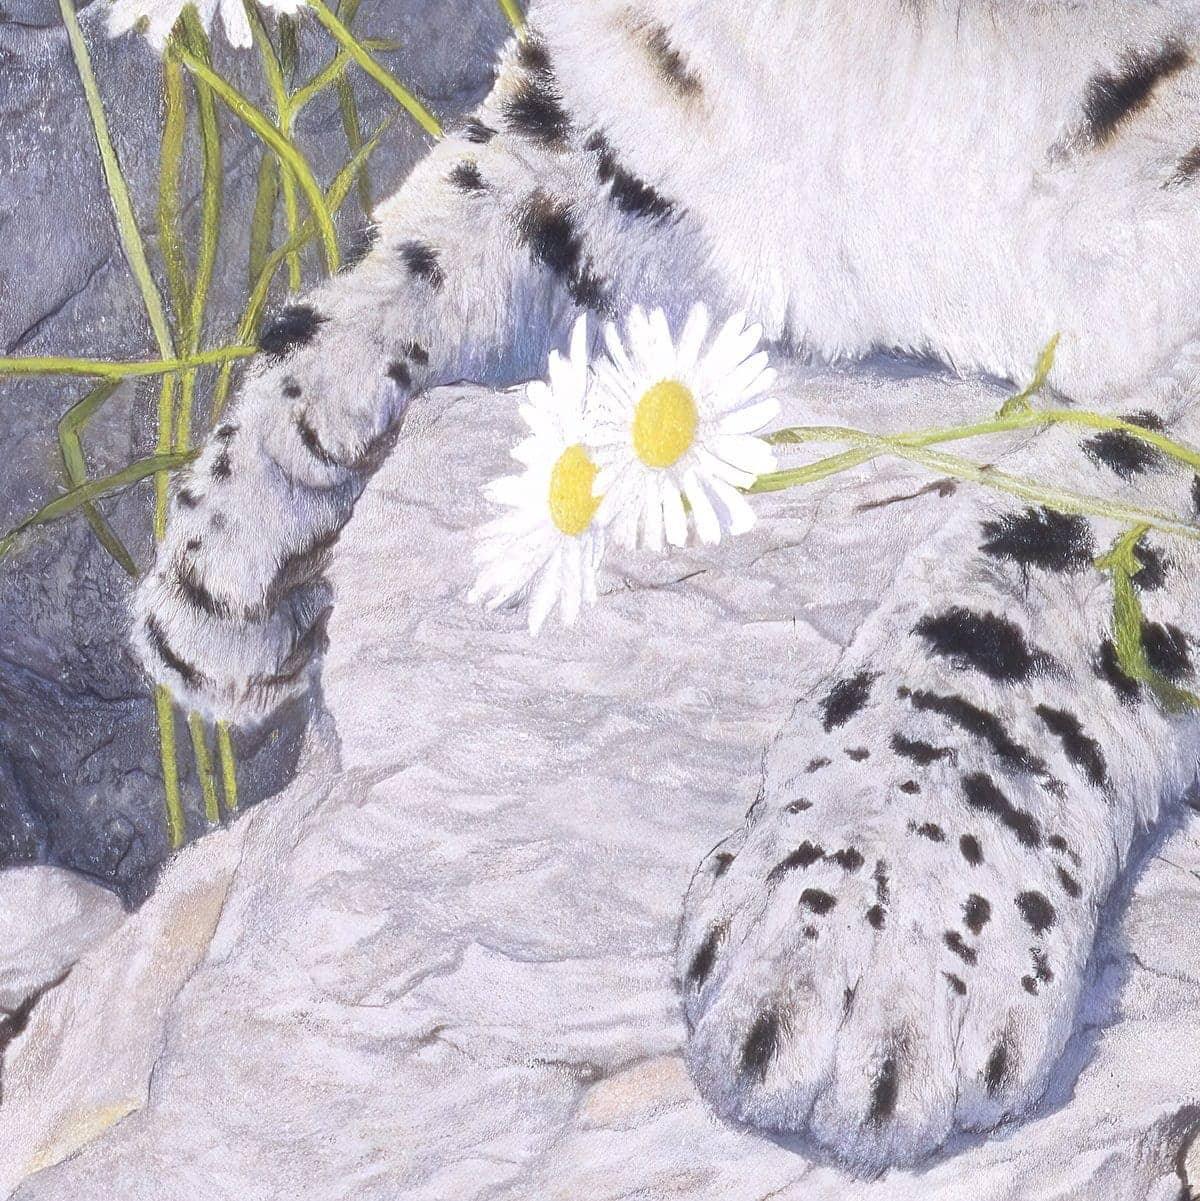 Snow Leopard Cub - Art Print | Artwork by Glen Loates